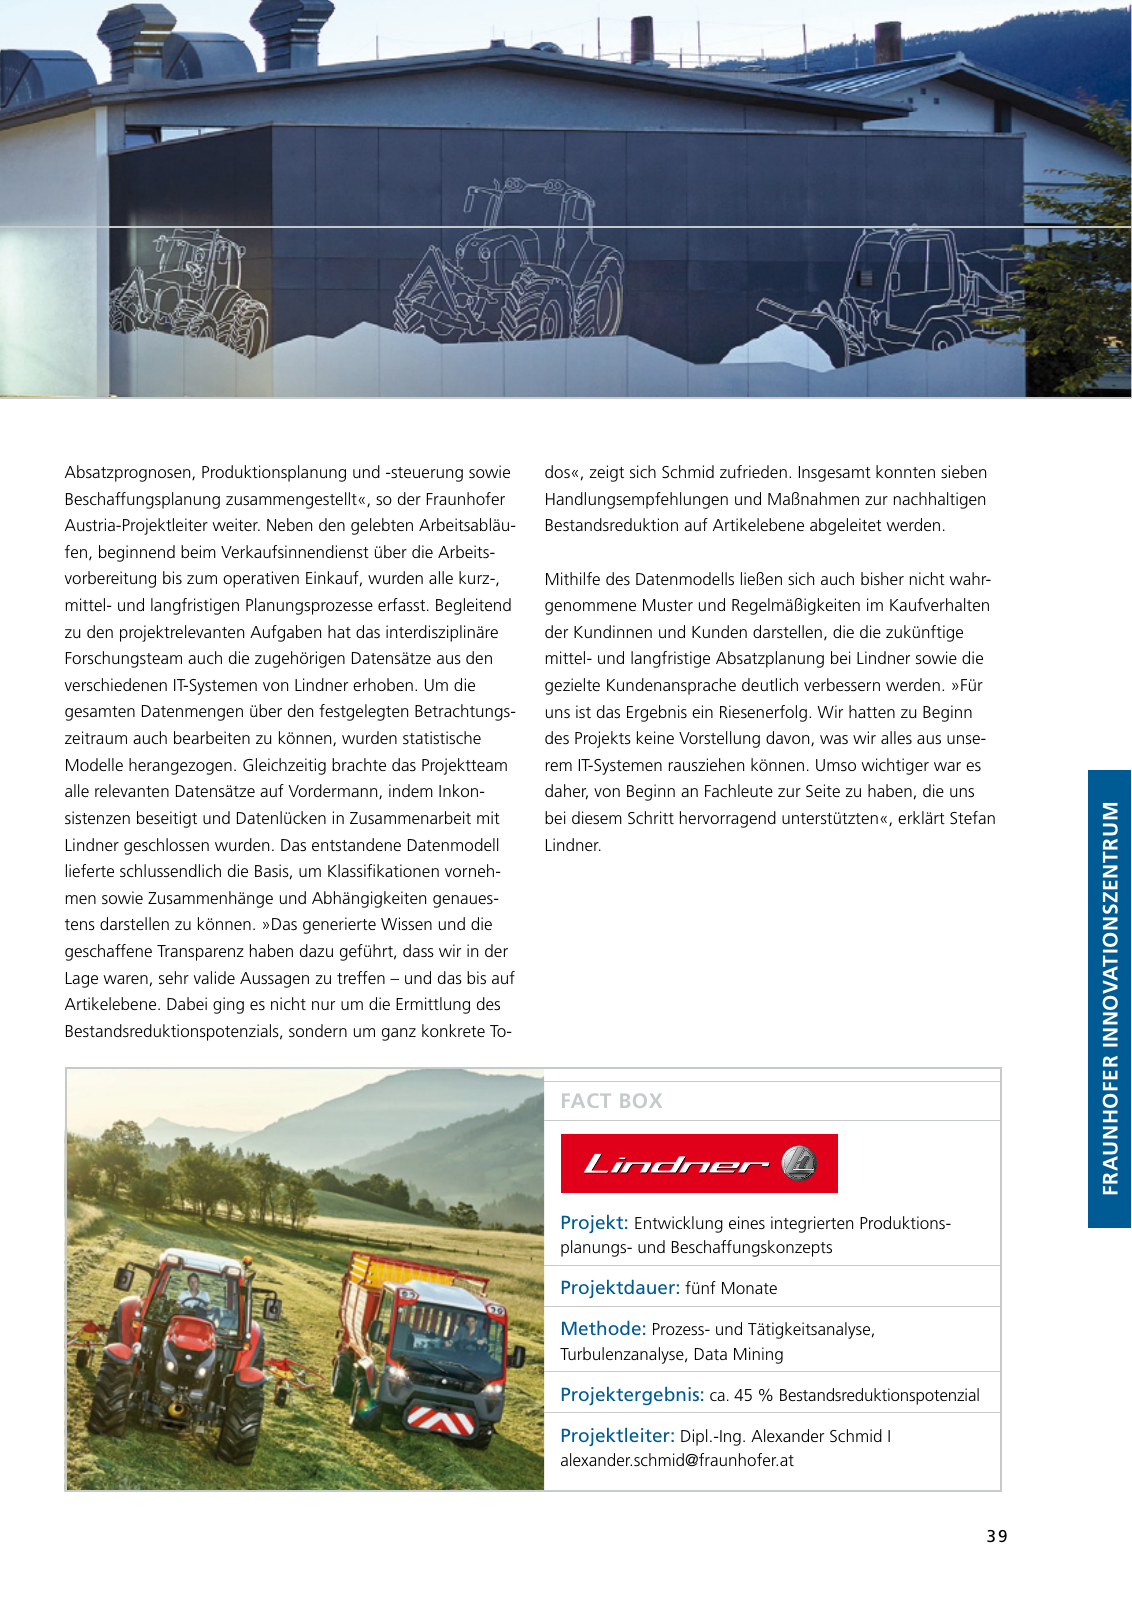 Vorschau Jahresbericht 2017 - Fraunhofer Austria Geschäftsbereich Produktions- und Logistikmanagment Seite 39